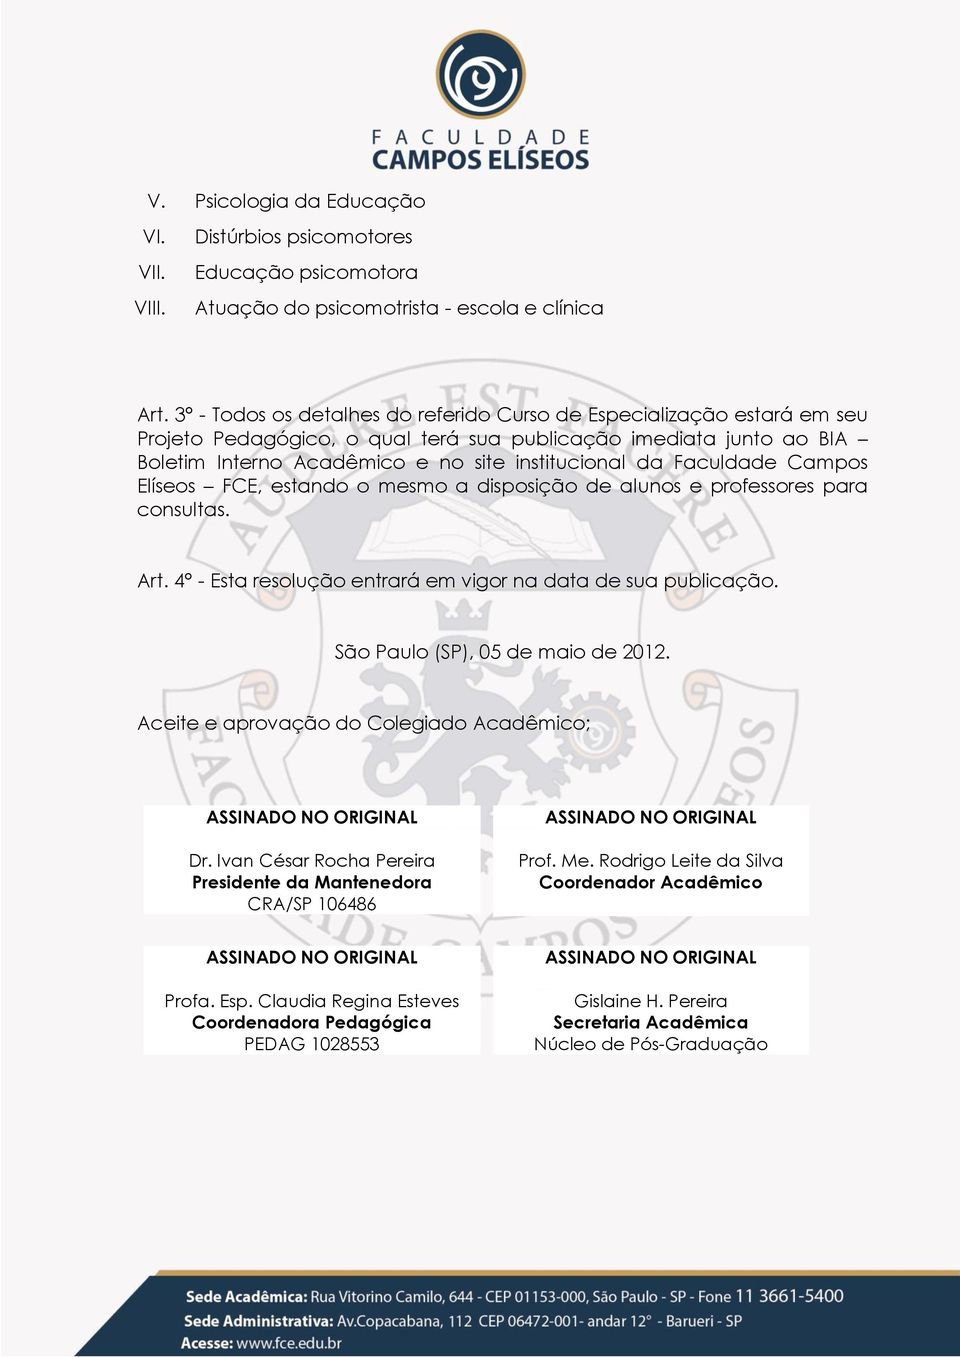 Faculdade Campos Elíseos FCE, estando o mesmo a disposição de alunos e professores para consultas. Art. 4 - Esta resolução entrará em vigor na data de sua publicação.